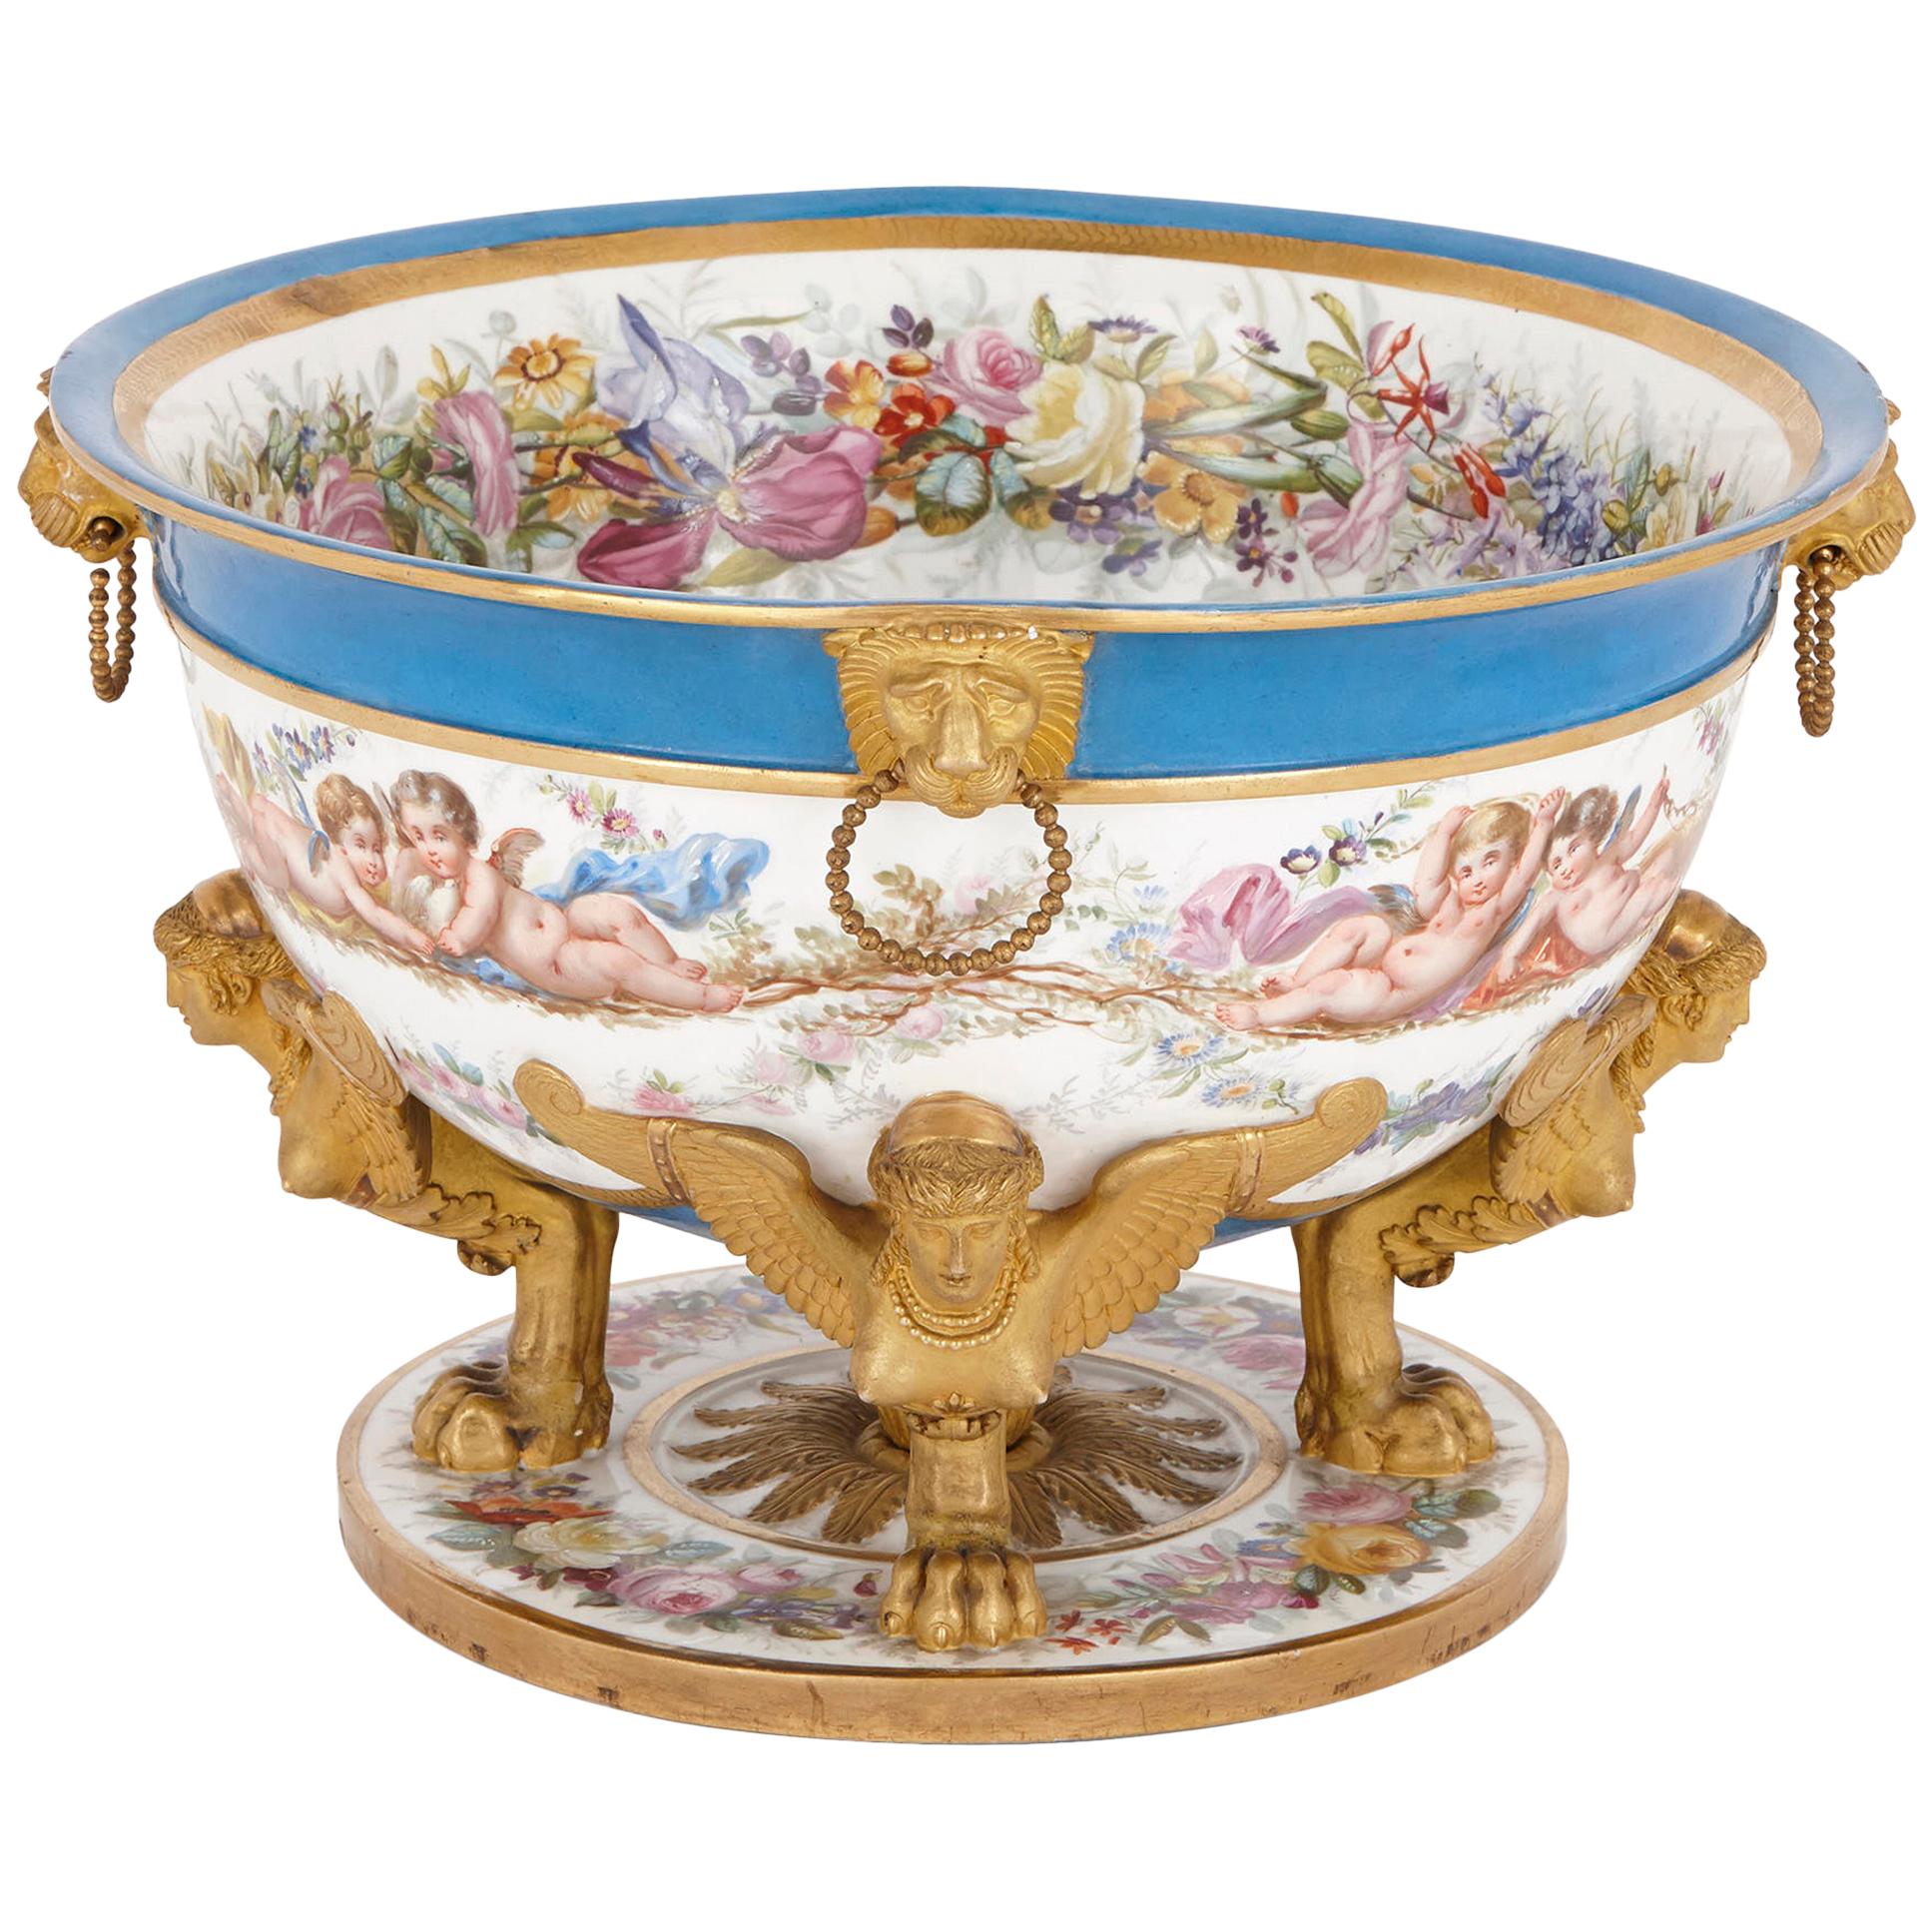 19th Century Sèvres style porcelain centrepiece 